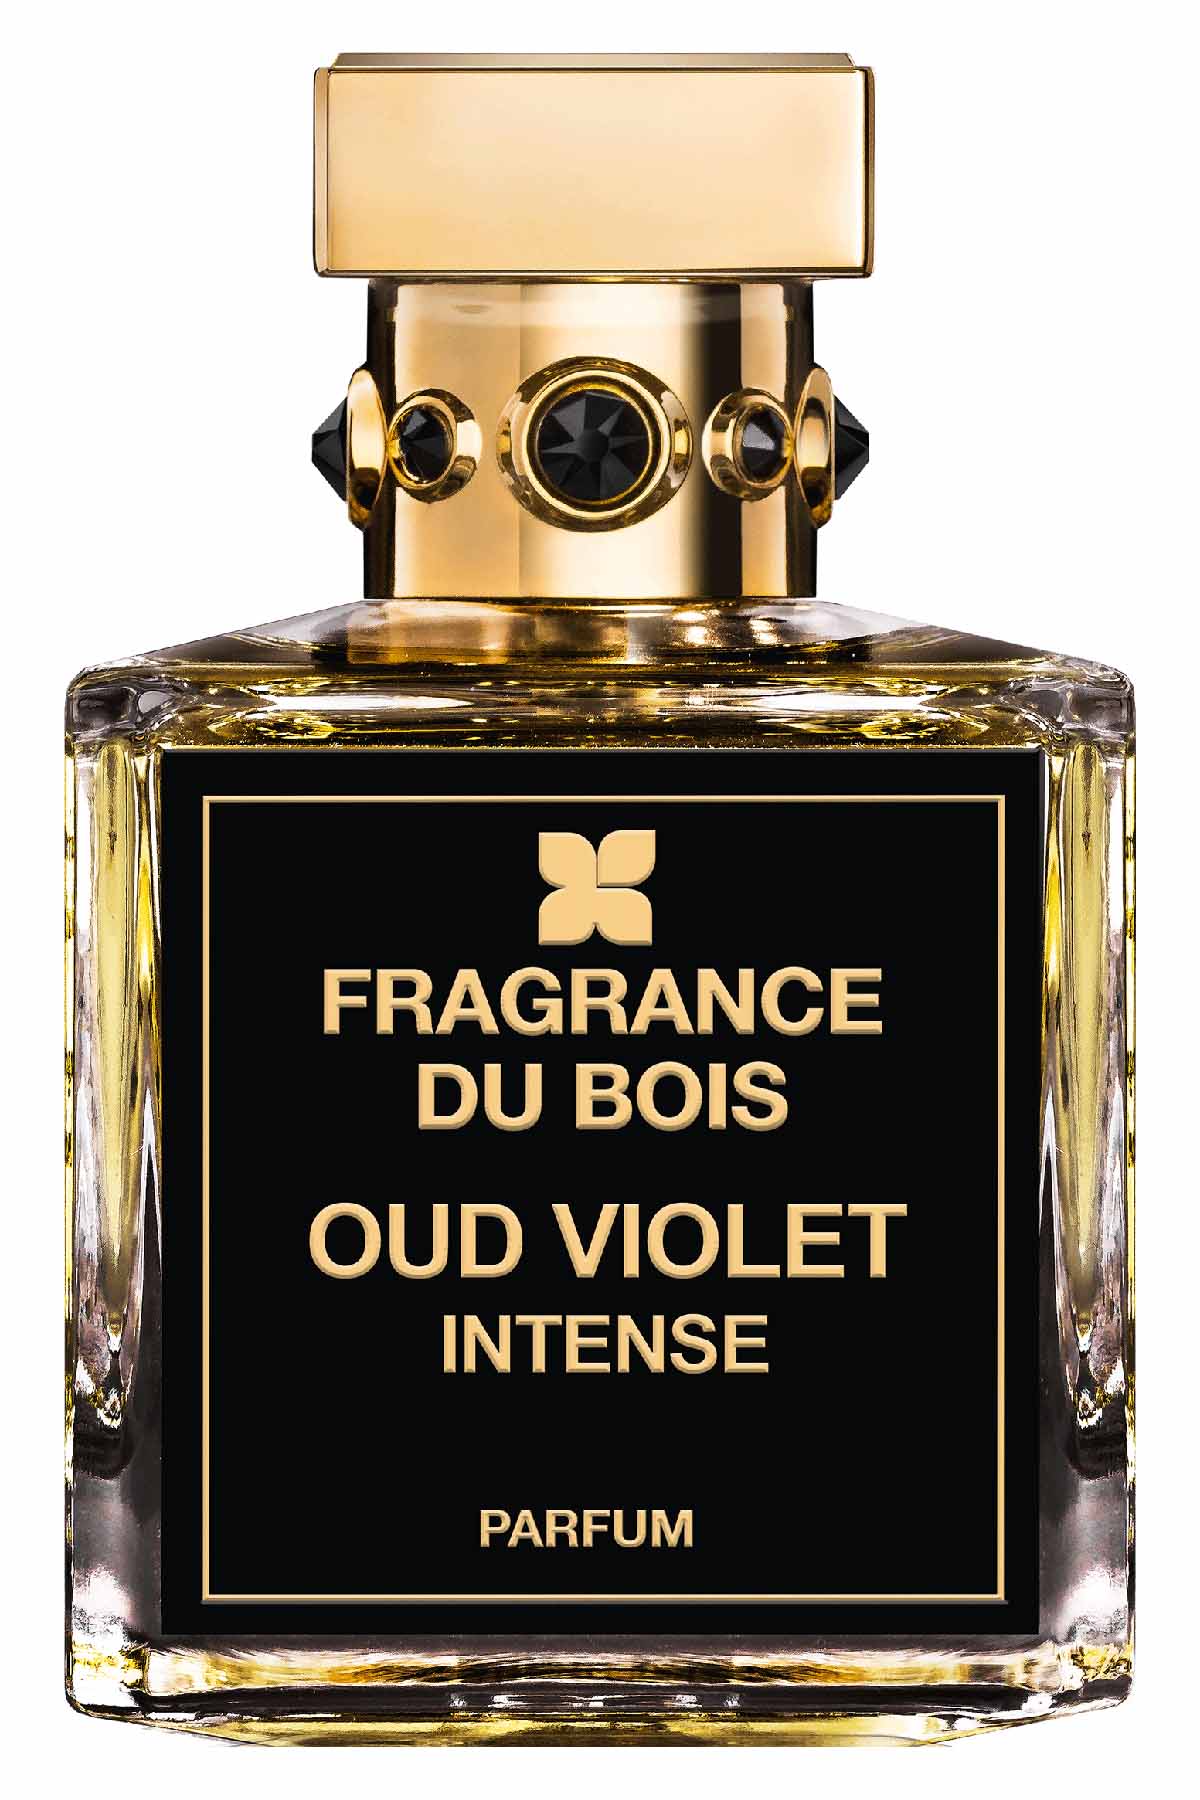 Fragrance Du Bois Oud Violet Intense Parfum